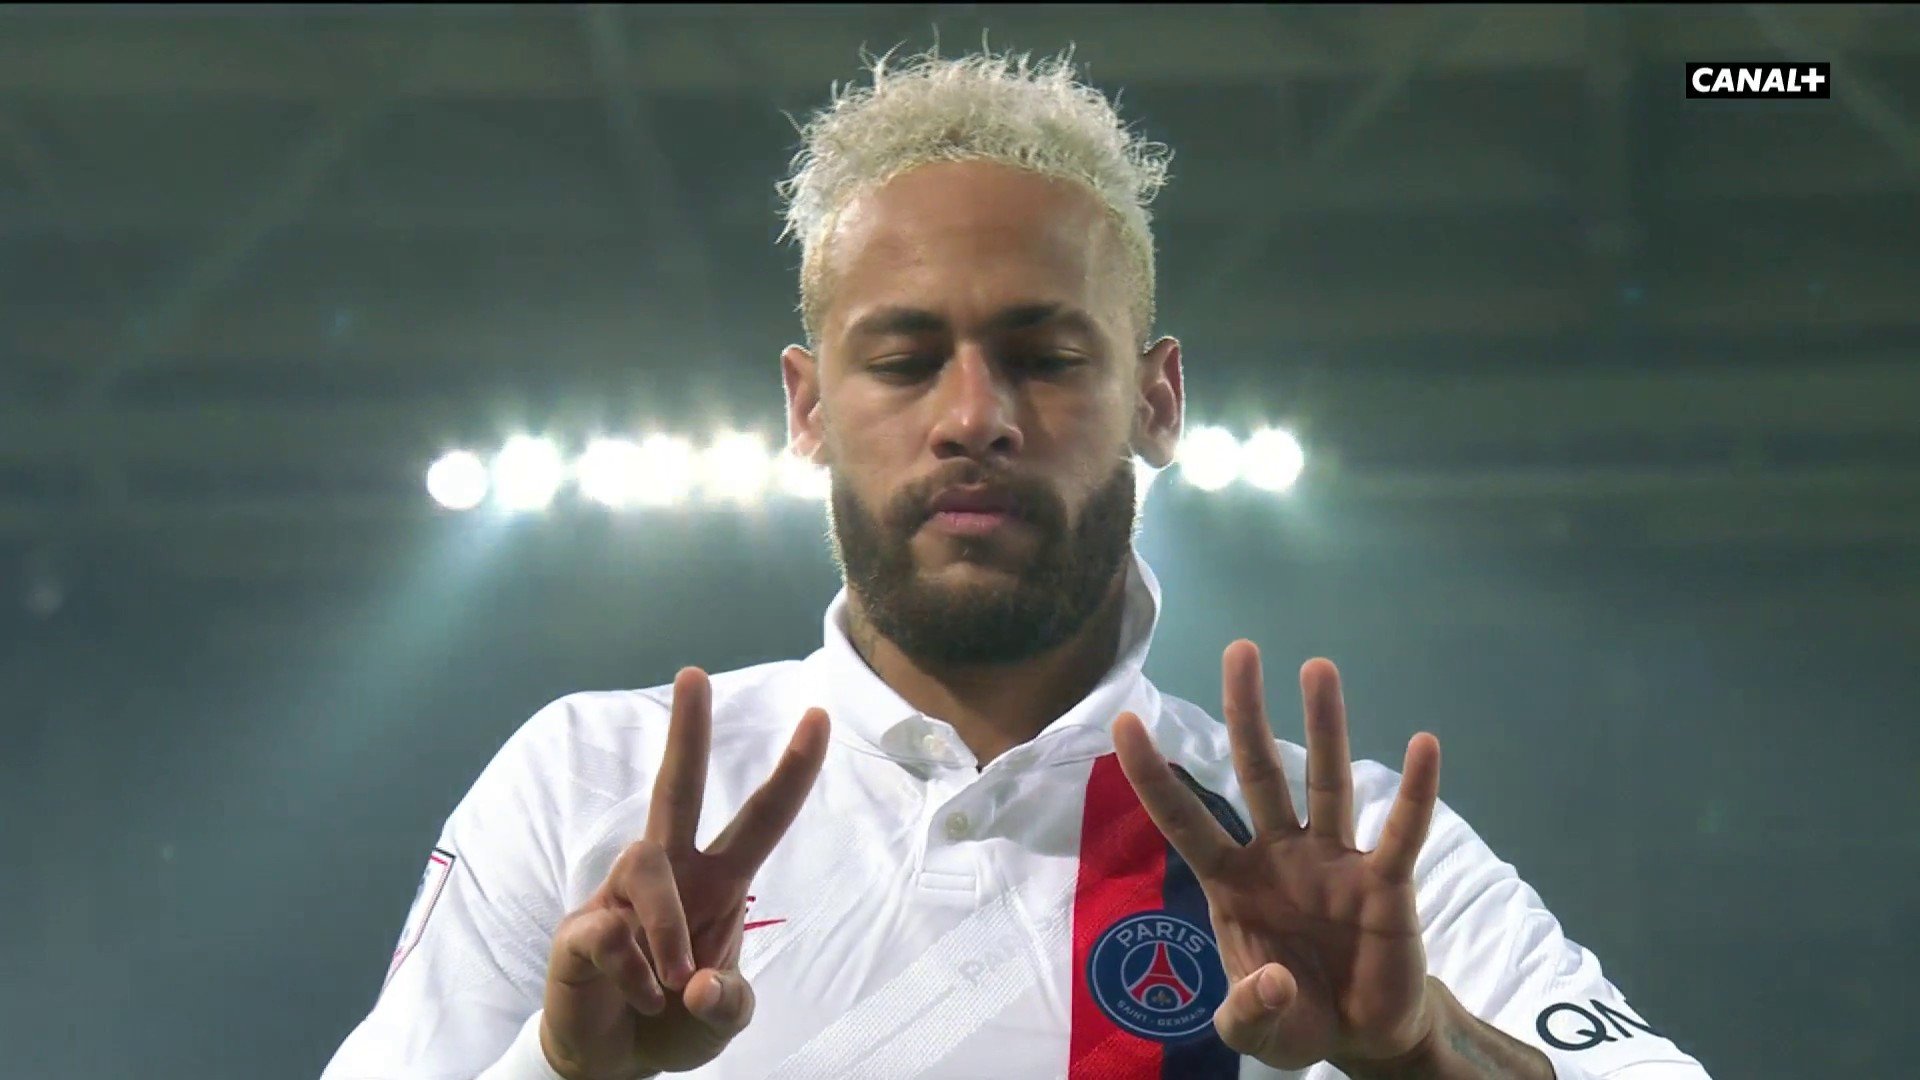 Le PSG n’a pas osé le lui dire, voici comment Neymar a su le décès de Kobe Bryant